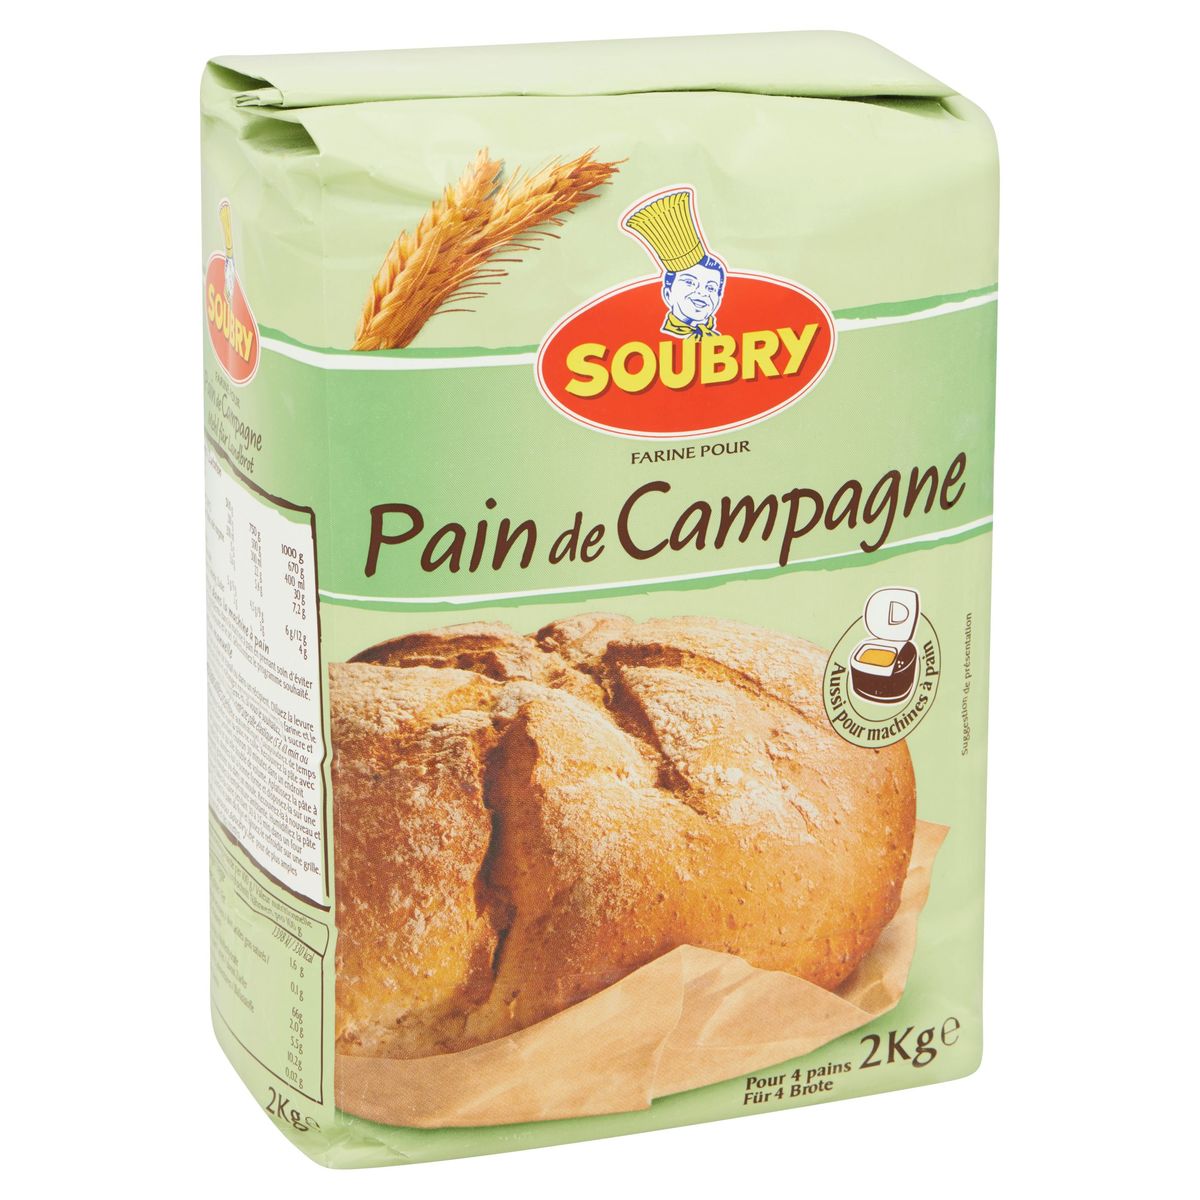 Soubry Farine pour Pain de Campagne 2kg